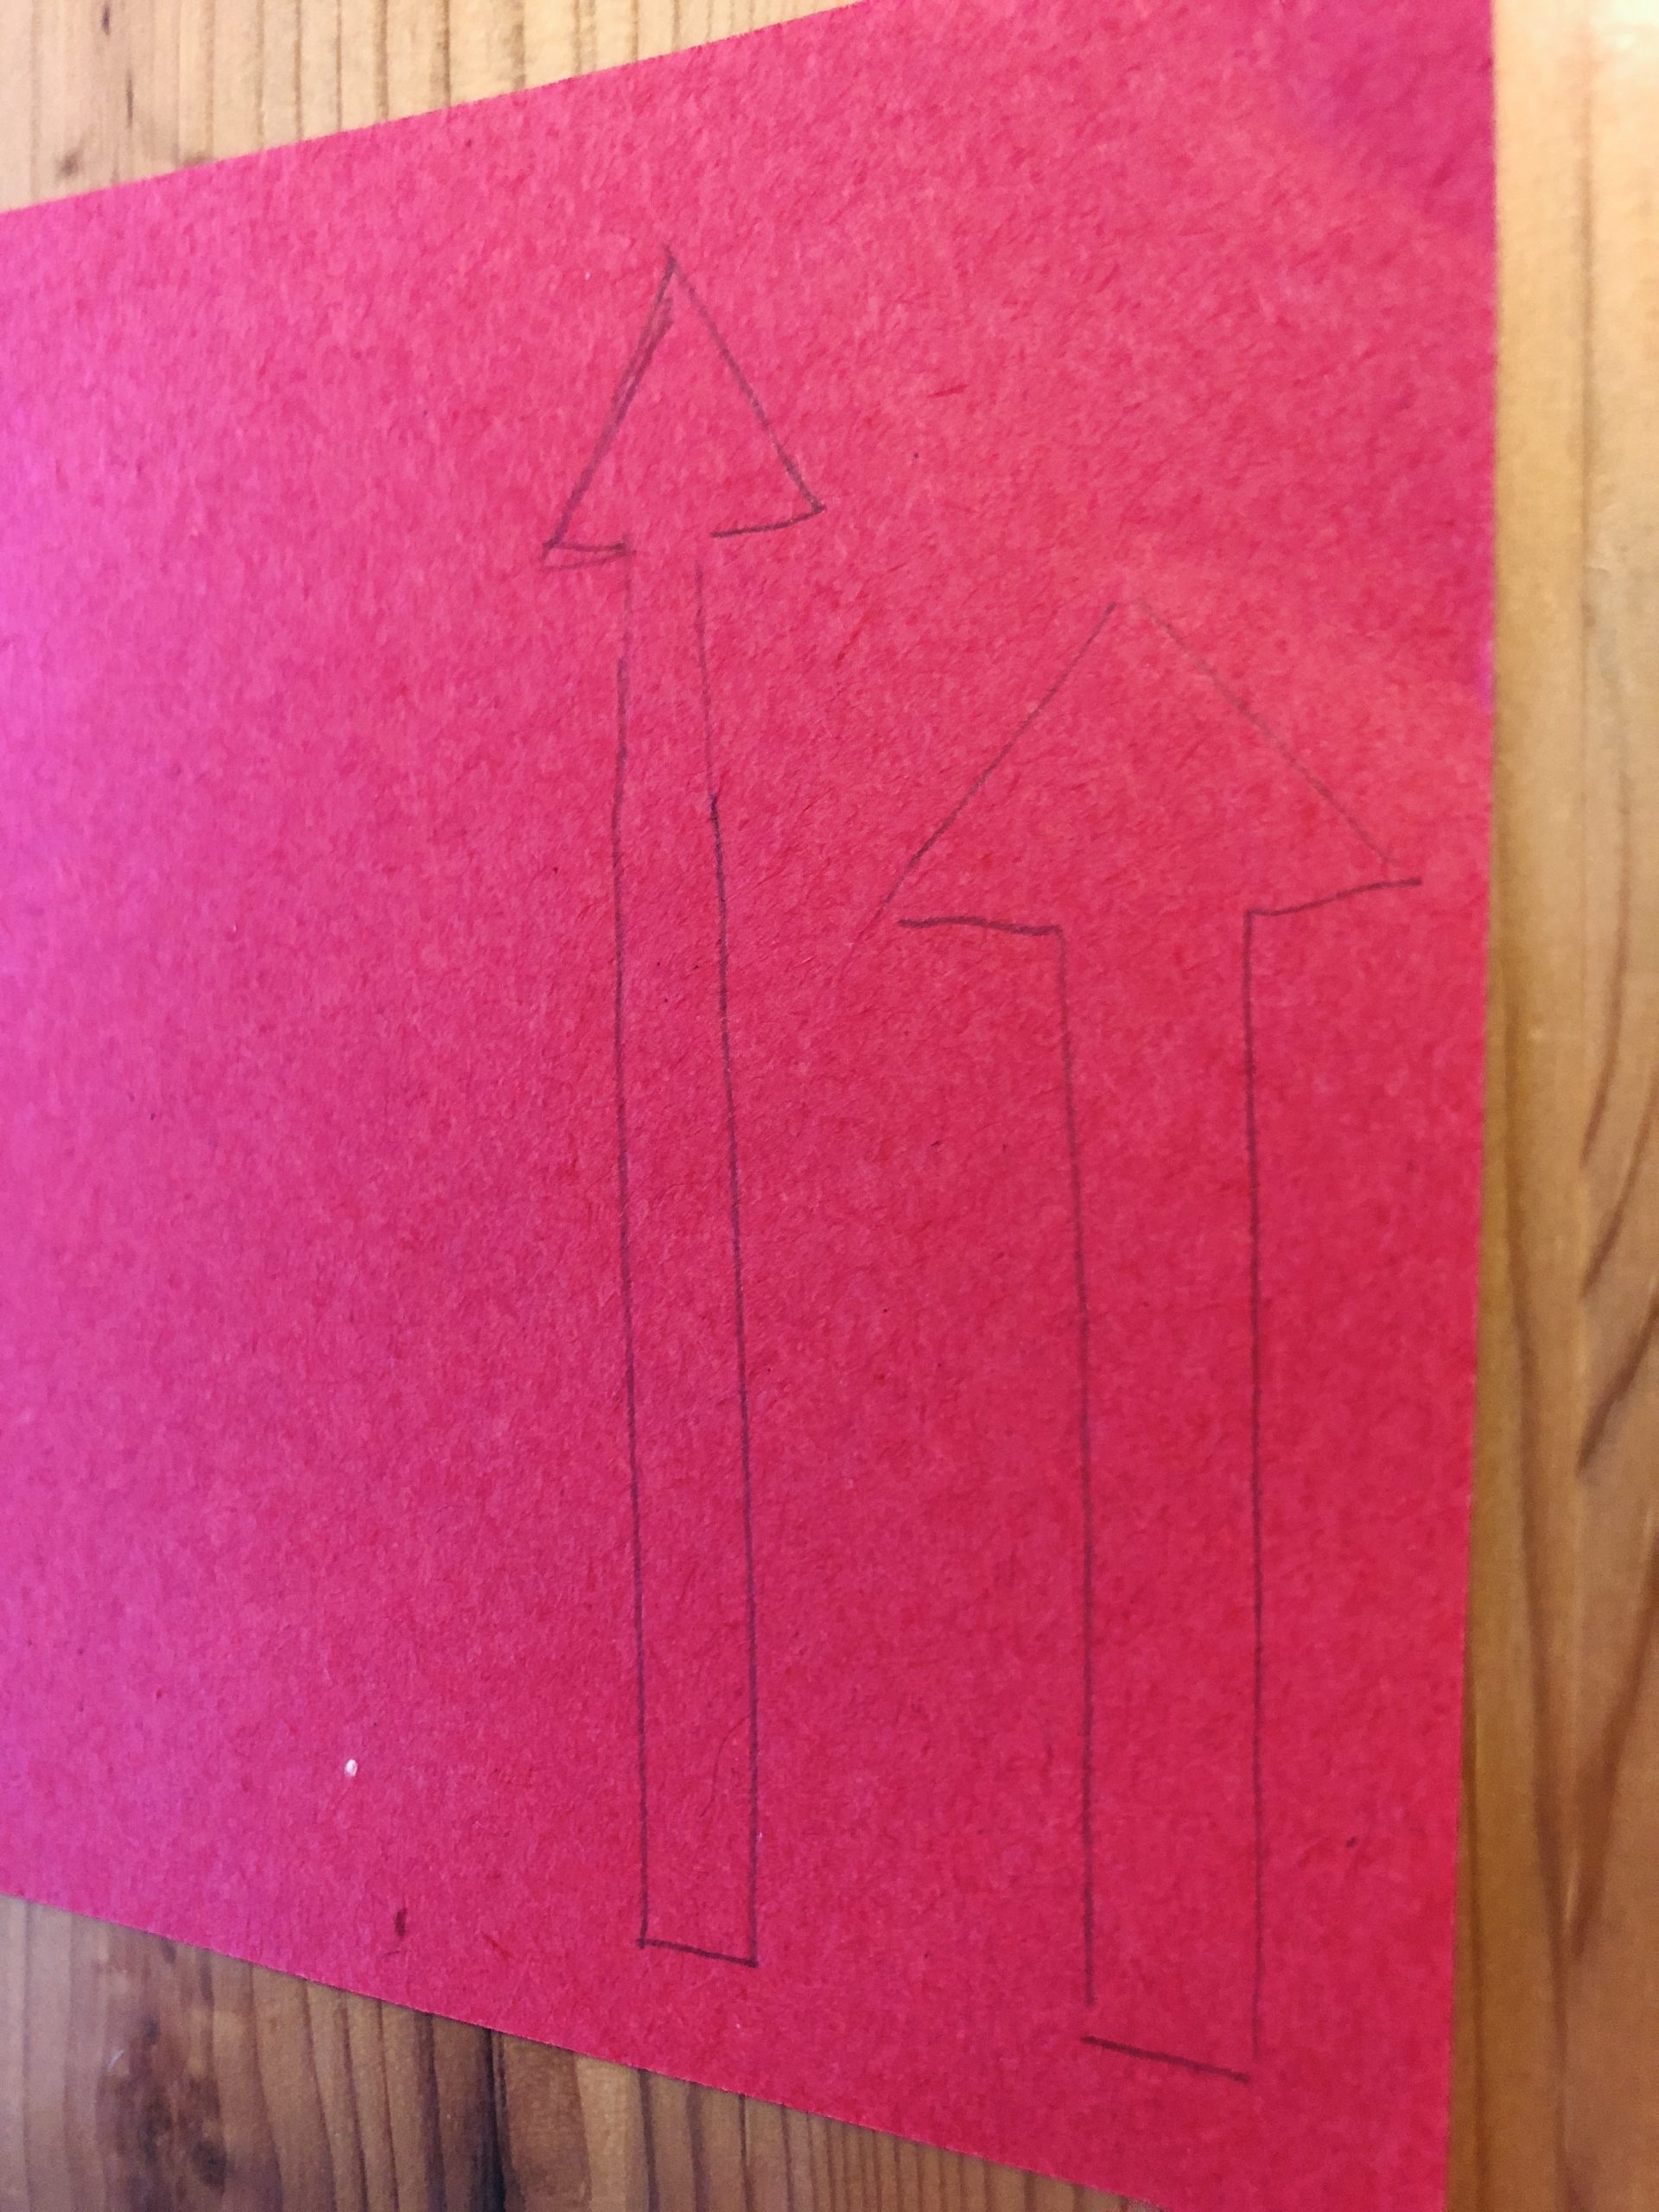 Bild zum Schritt 17 für das Bastel- und DIY-Abenteuer für Kinder: 'Malt zwei unterschiedlich große Pfeile auf ein Tonpapier auf.'